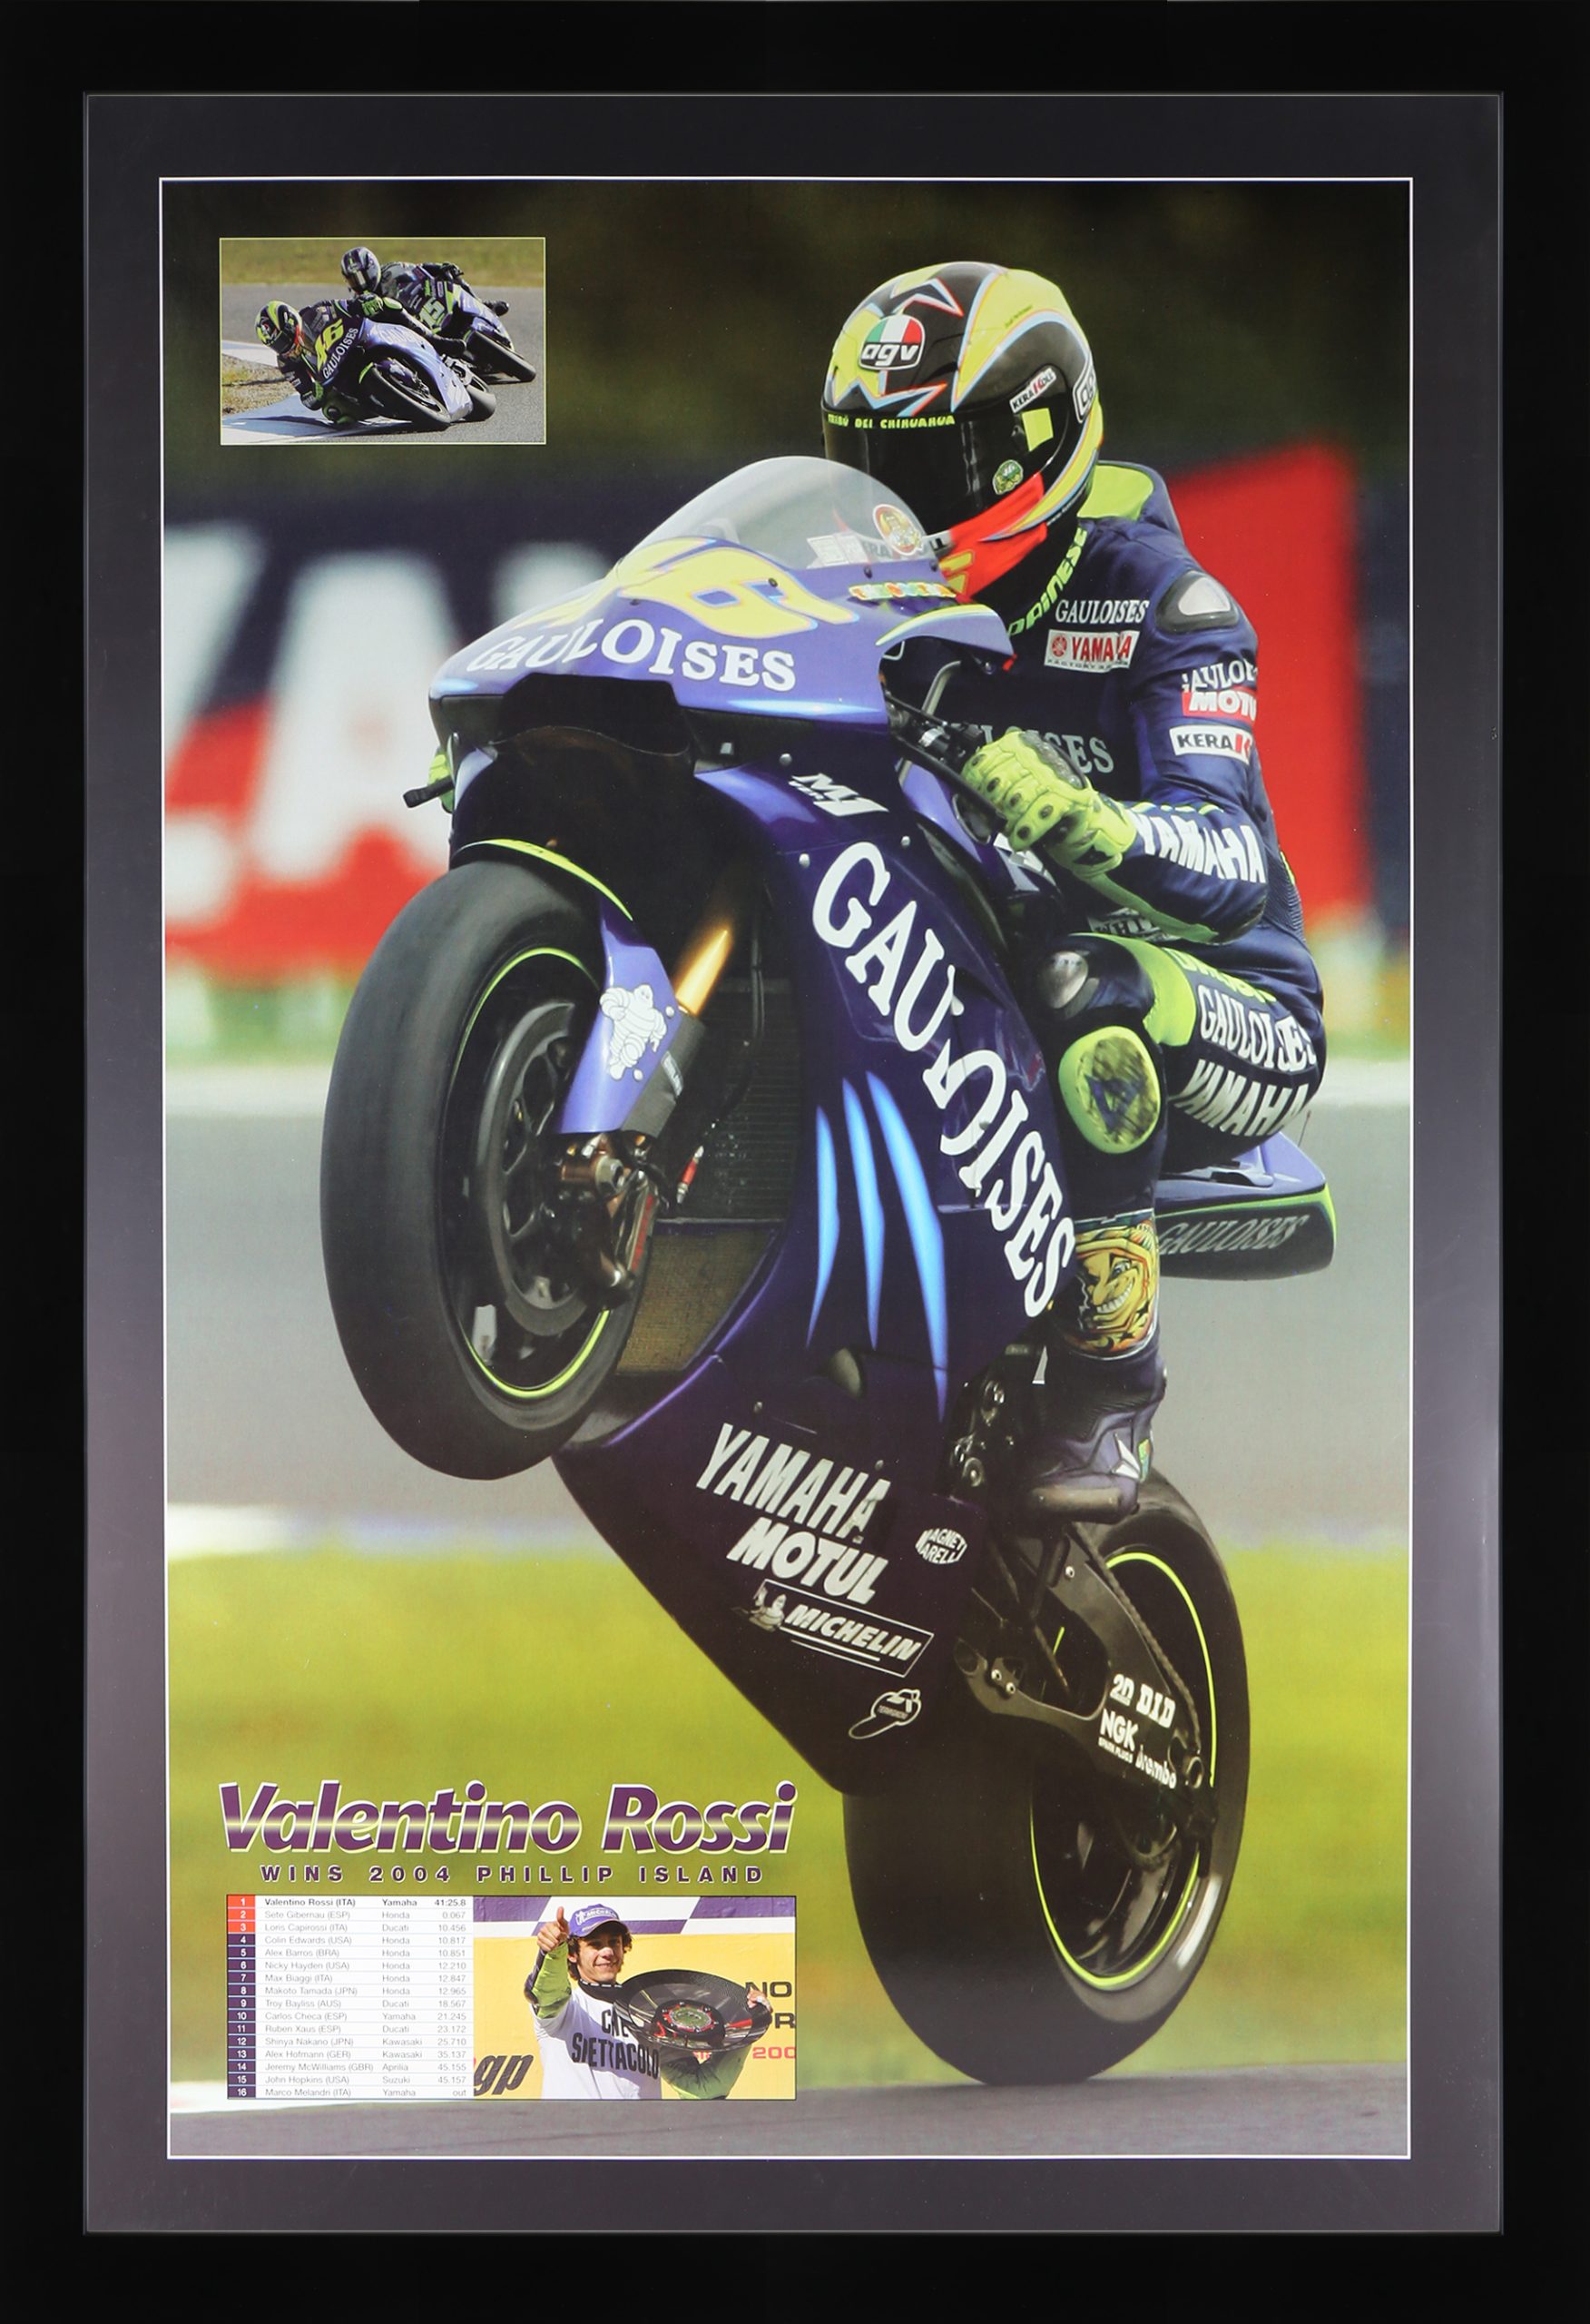 Valentino Rossi 2004 Phillip Island Framed Poster. Valentino Rossi 2004 Moto GP World Champion.